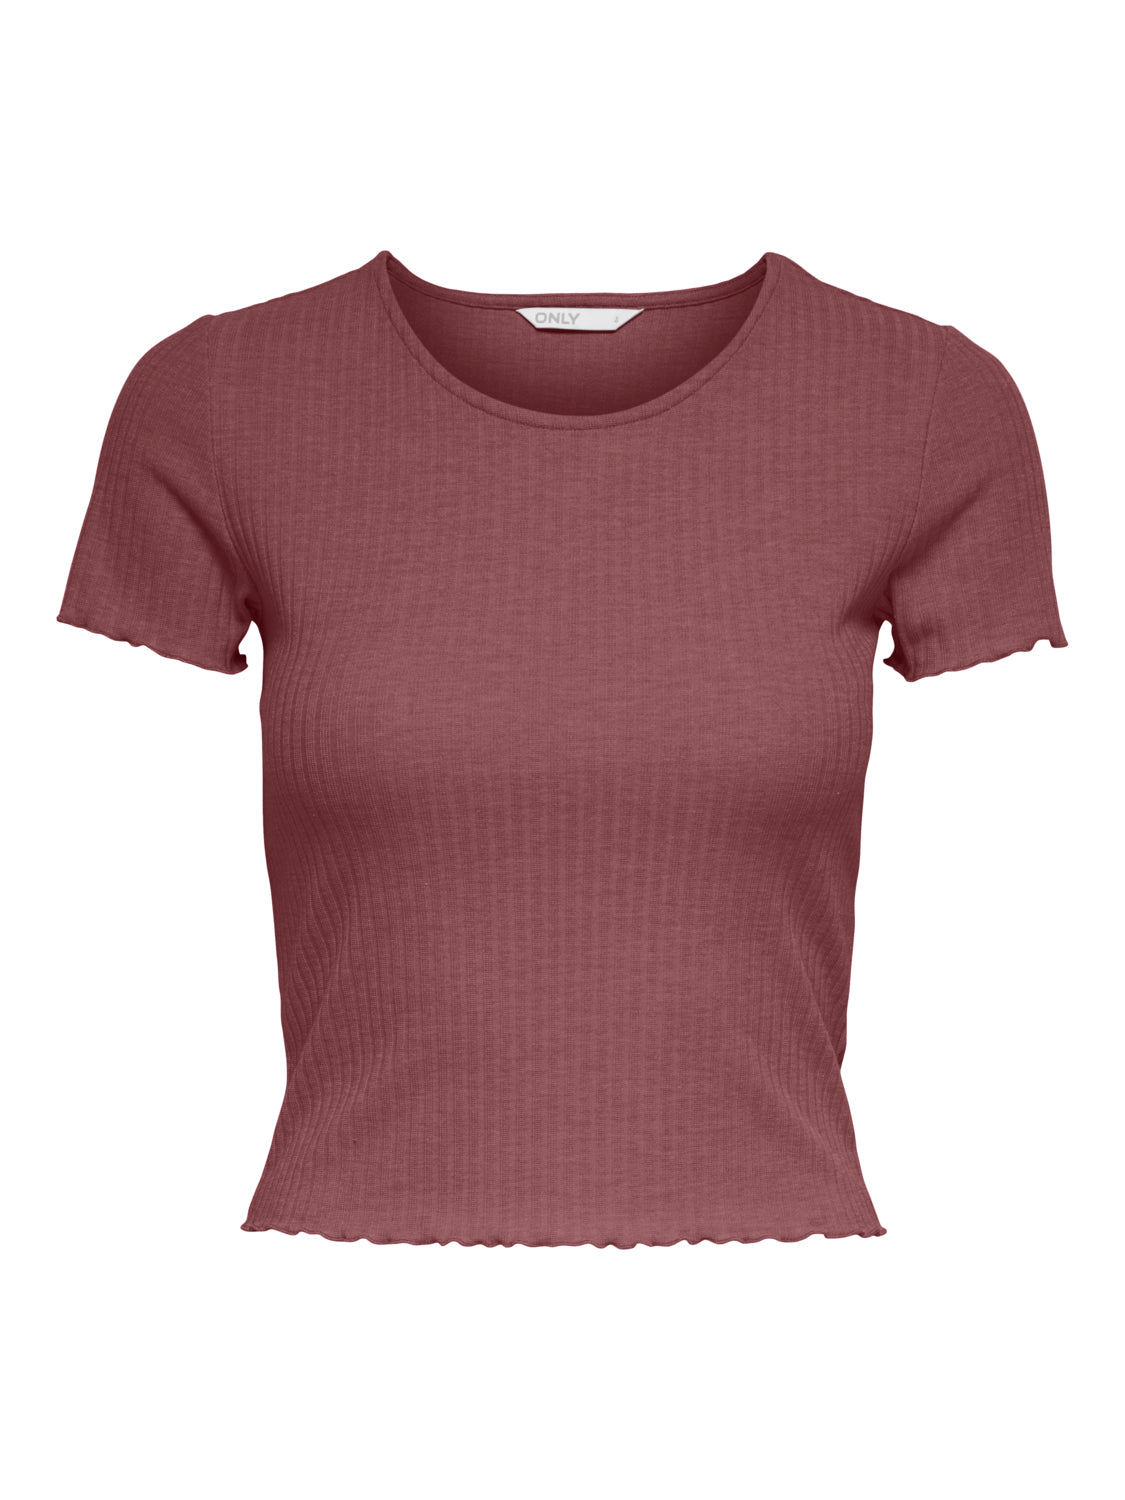 ONLEMMA T-Shirt - Rose Brown